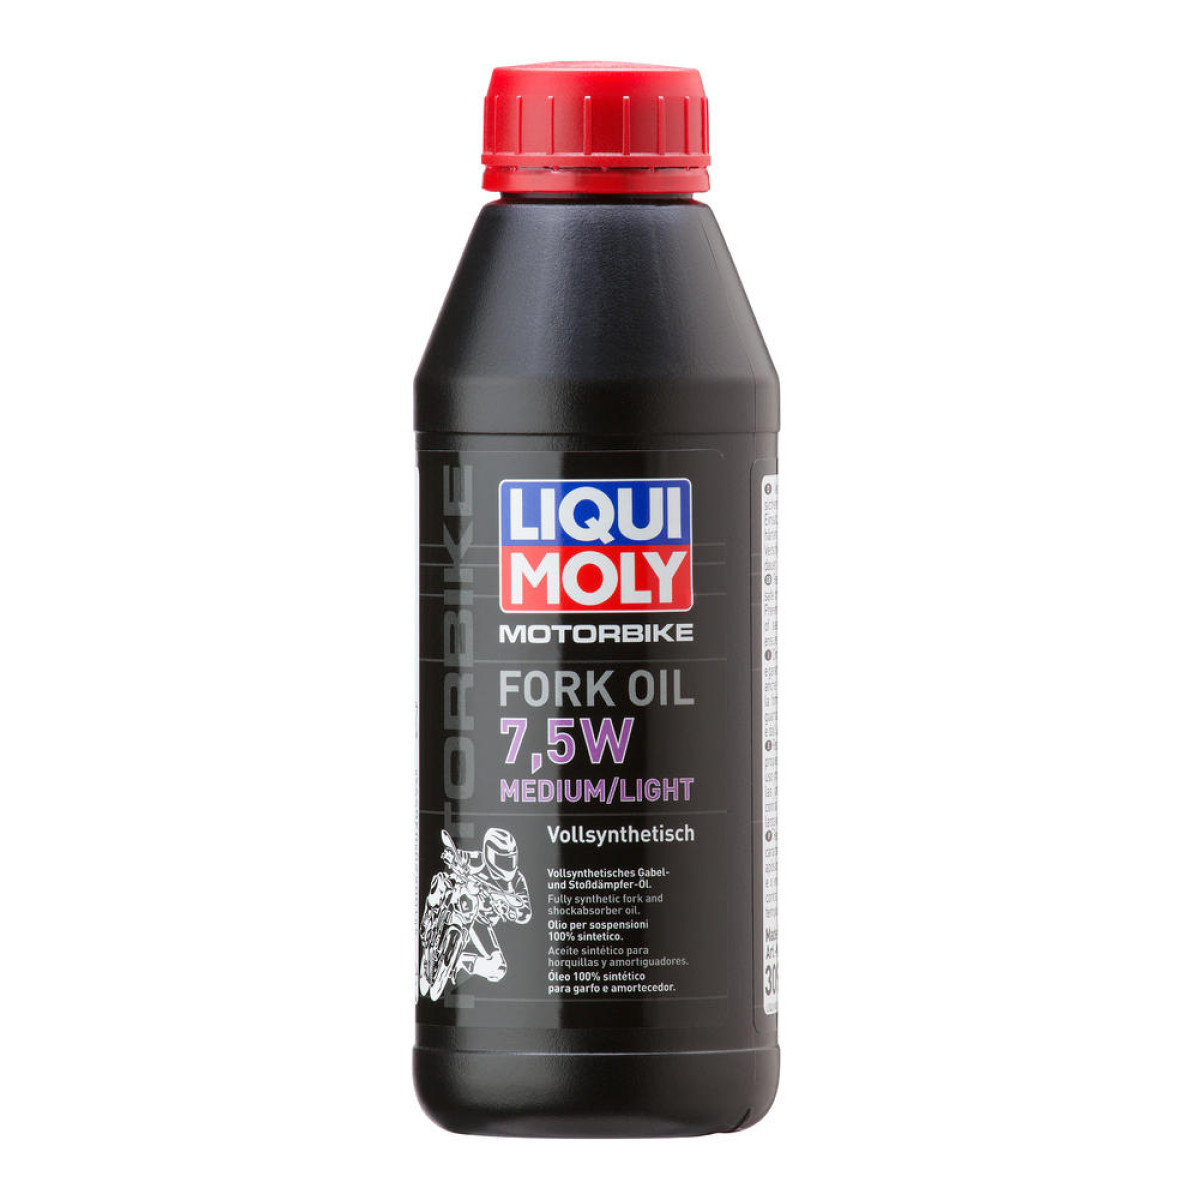 Liqui Moly Gabelöl  Medium/Light, 7.5W, 1 Liter